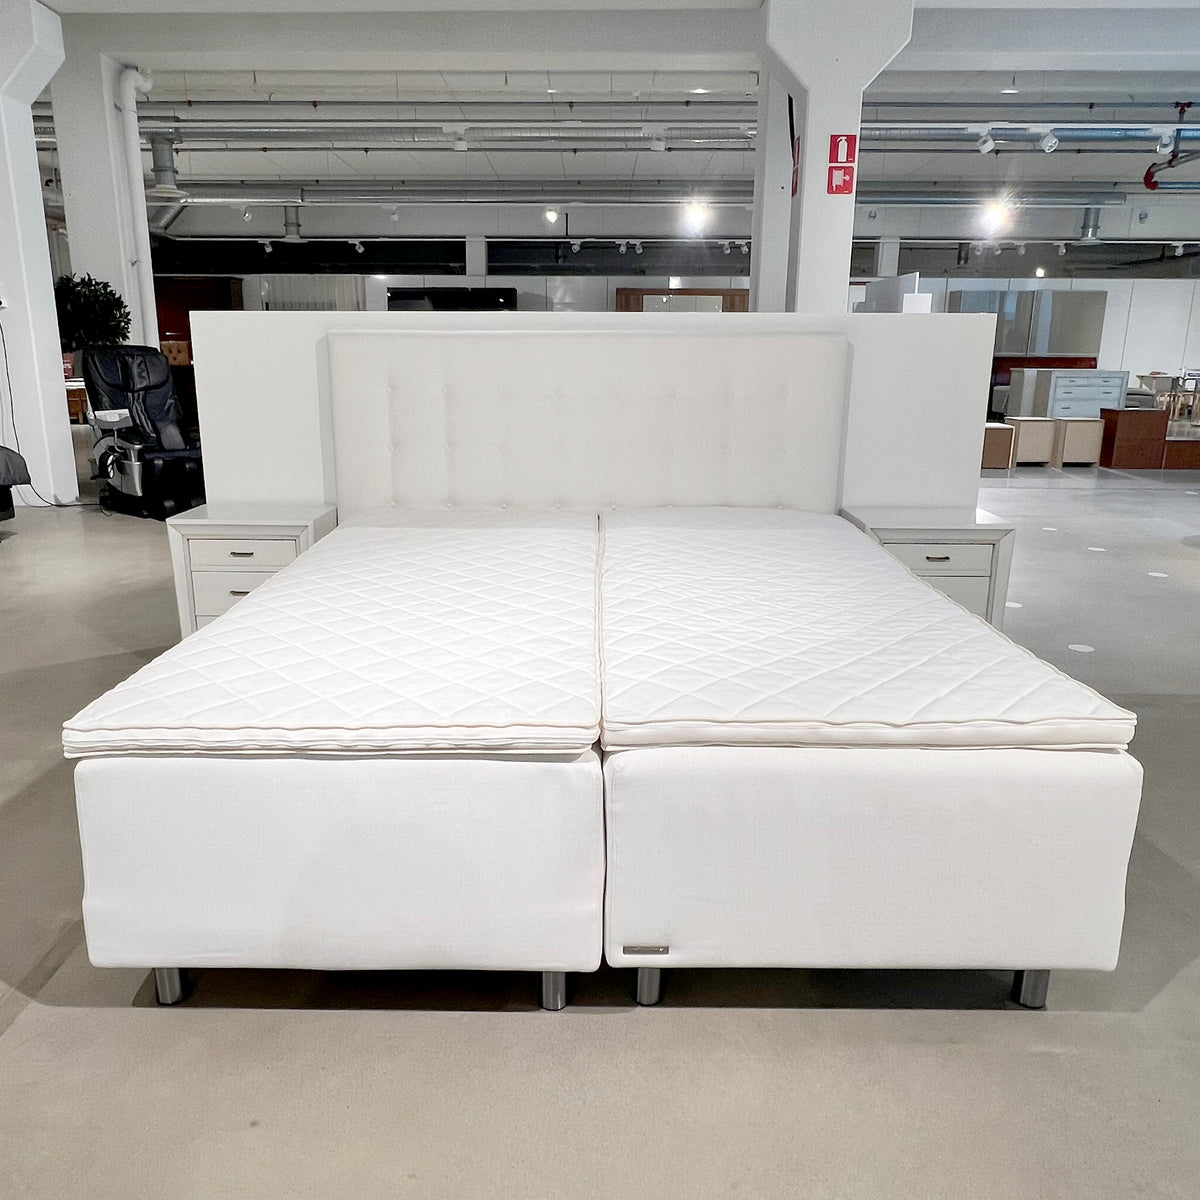 Uniikki-runkopatjasänky 180 x 210 cm sängynpäädyllä ja yöpöydillä